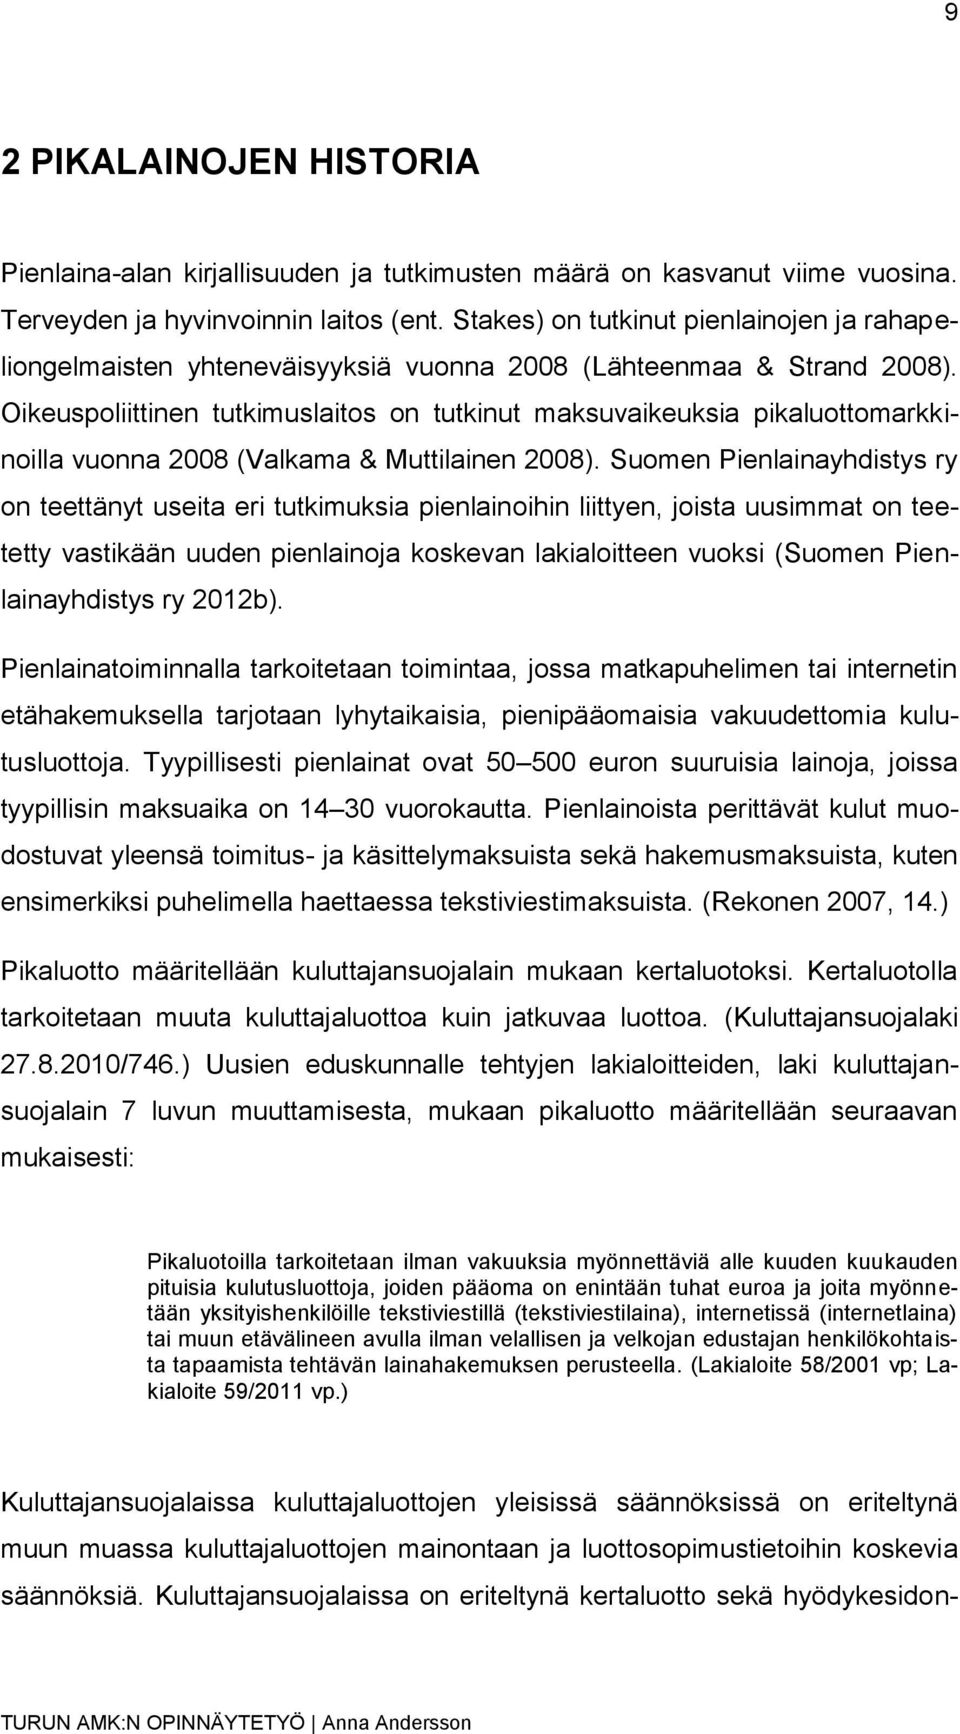 Oikeuspoliittinen tutkimuslaitos on tutkinut maksuvaikeuksia pikaluottomarkkinoilla vuonna 2008 (Valkama & Muttilainen 2008).